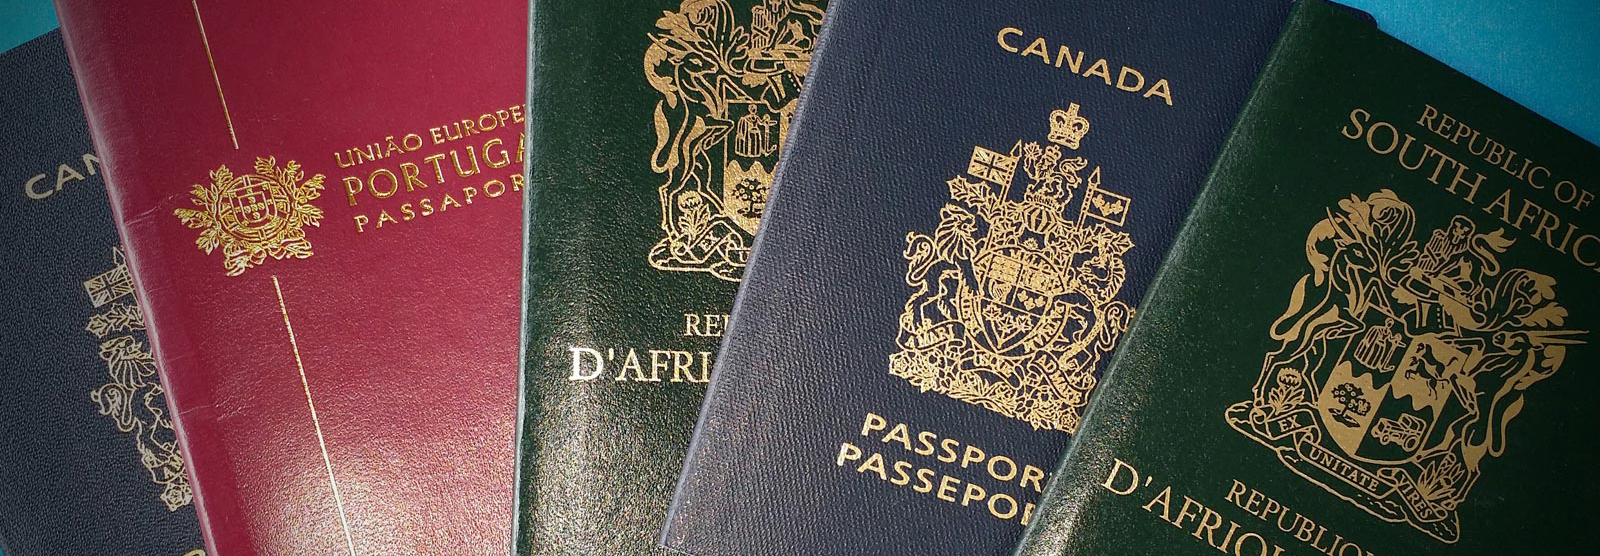 مهر نزدن به پاسپورت راهکاری اثربخش برای افزایش گردشگران خارجی است